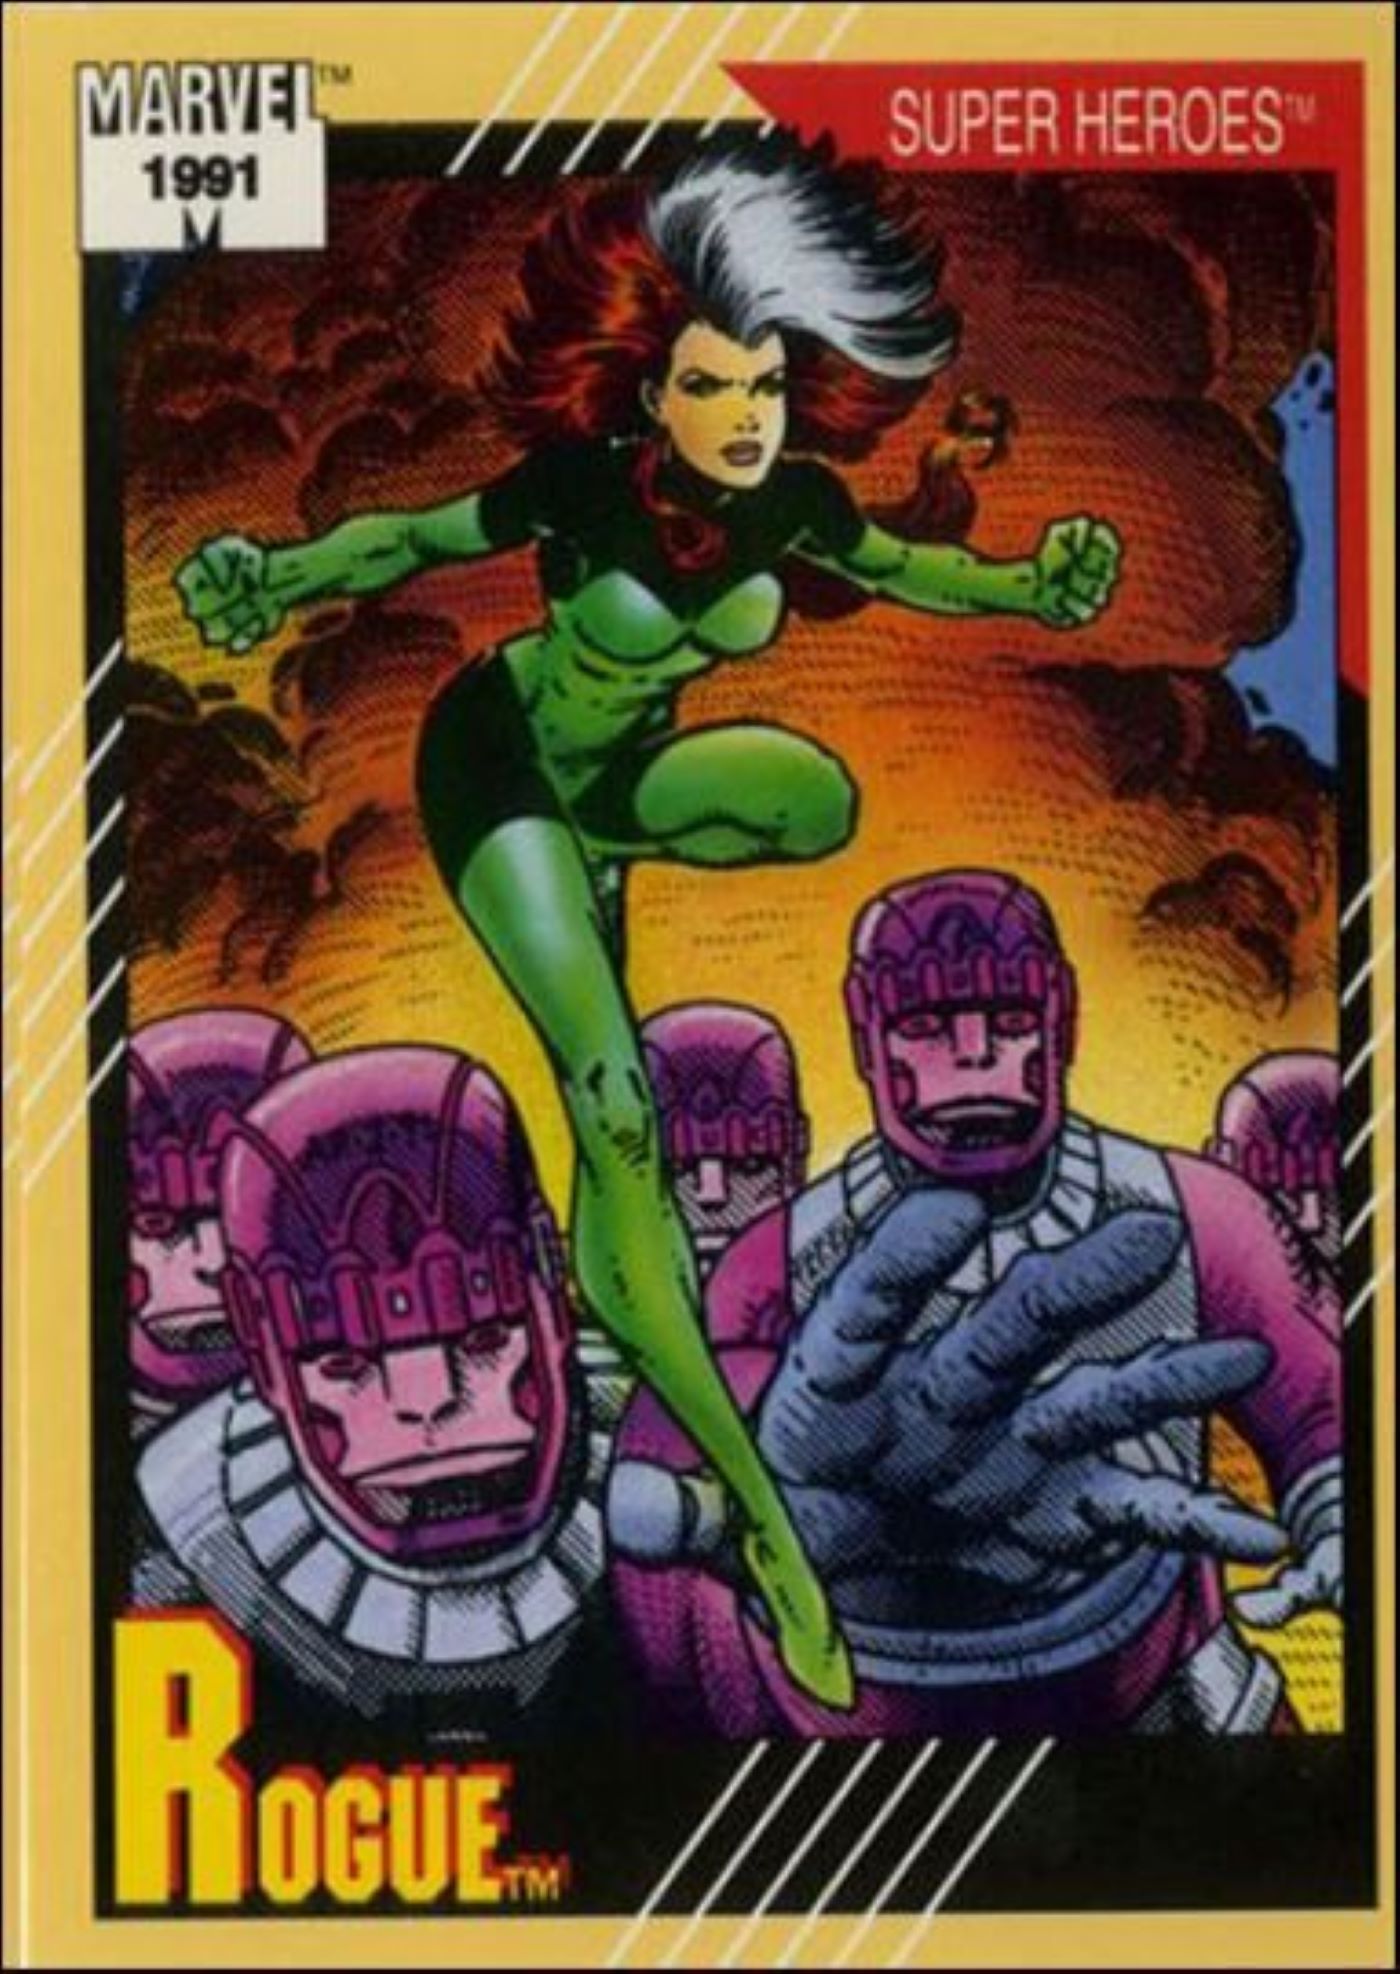 Marvel Universe_ Série 2 42 A, janeiro de 1991 Cartão colecionável da Impel